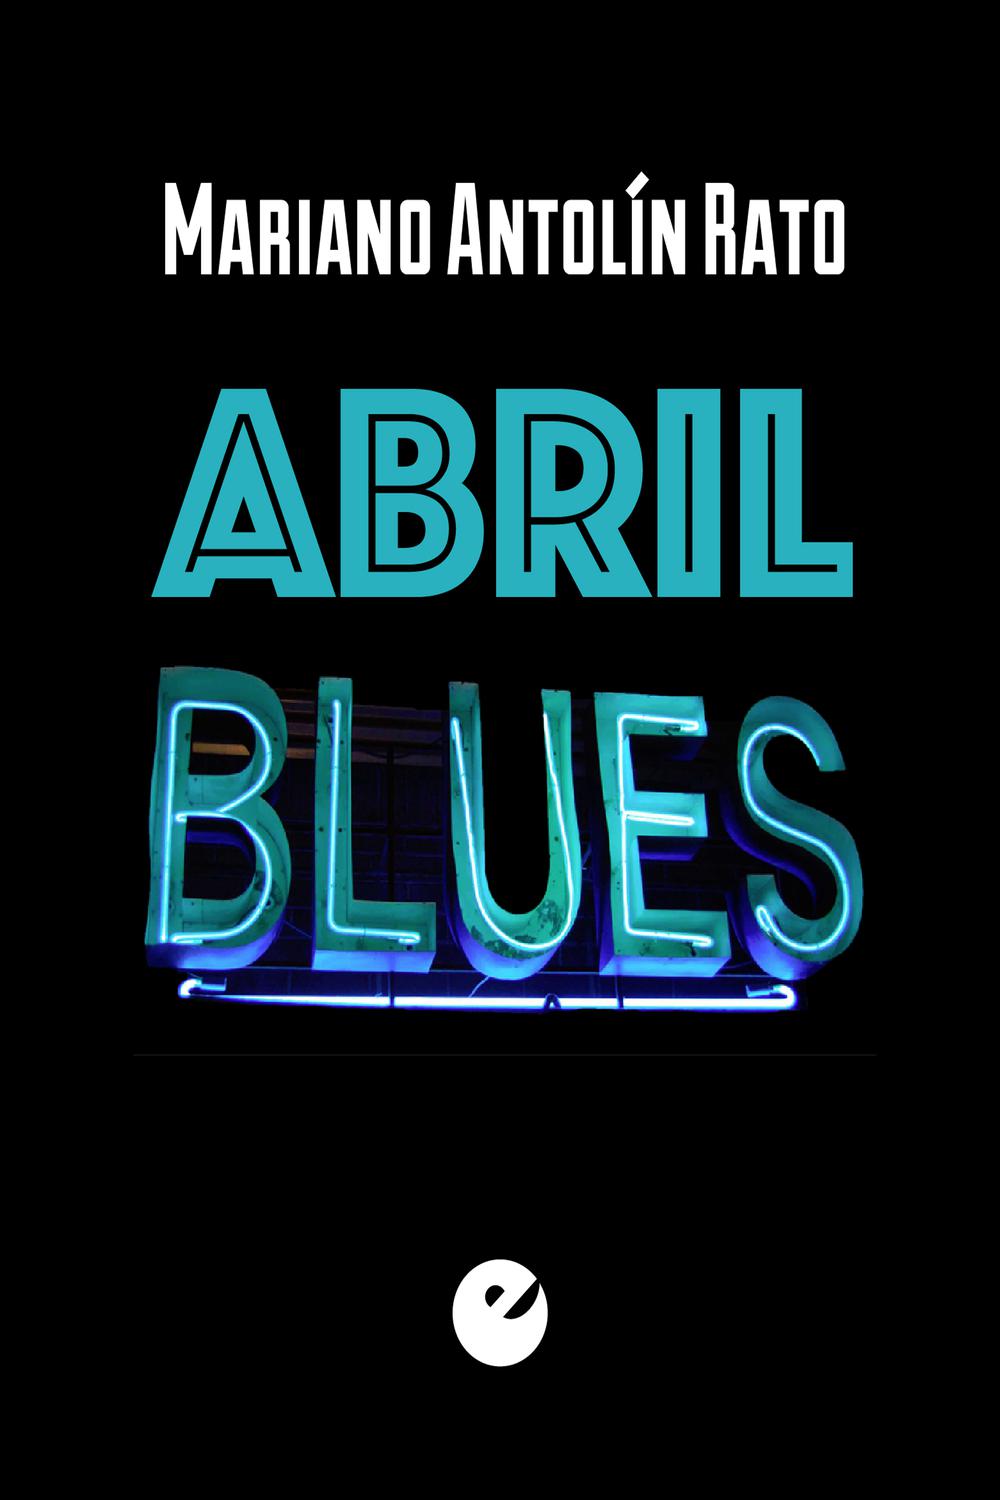 Abril blues - Mariano Antolín Rato